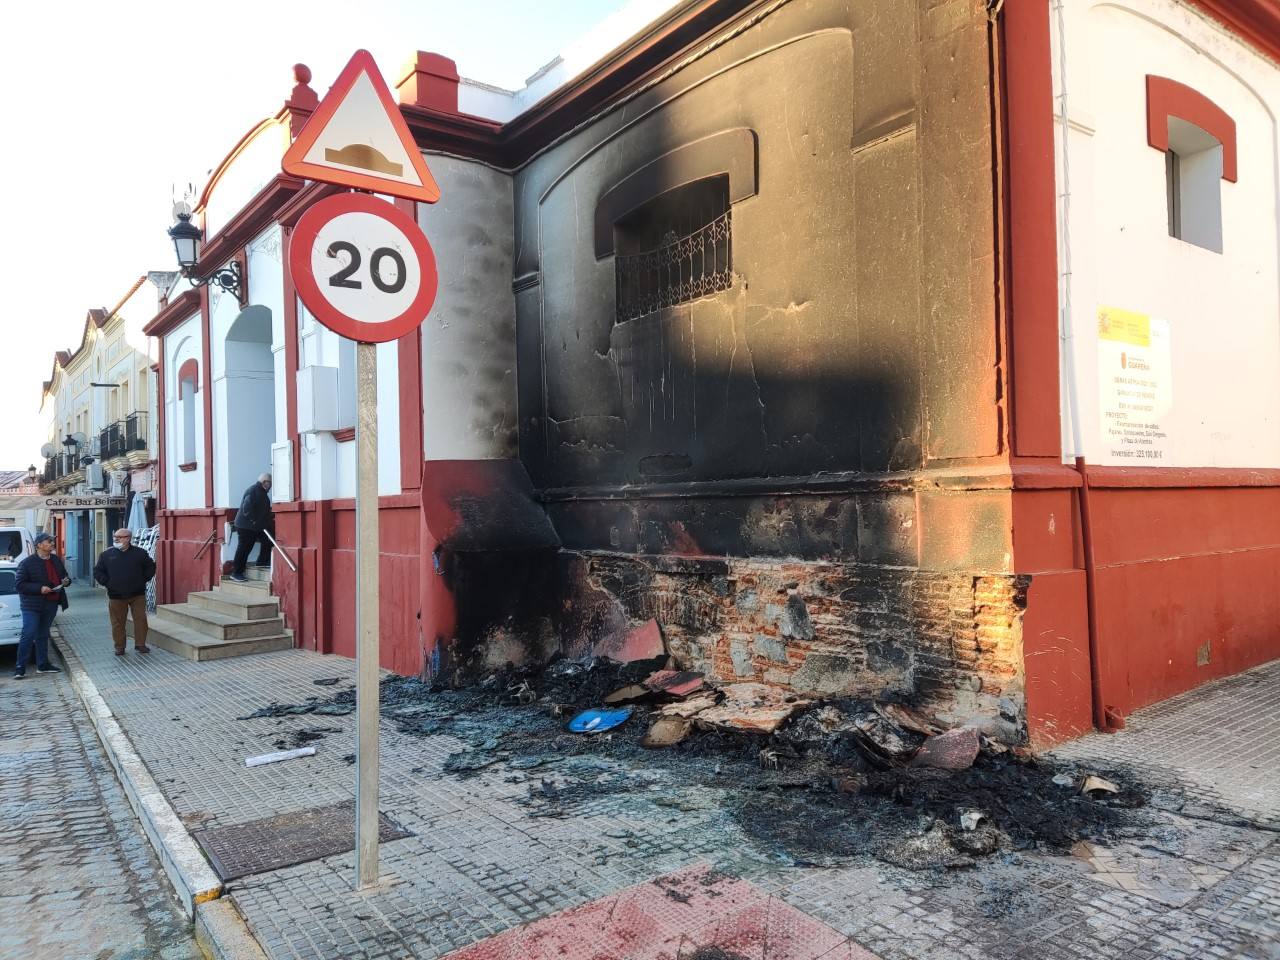 Incivismo en Guareña por los actos vandálicos sucedidos esta madrugada